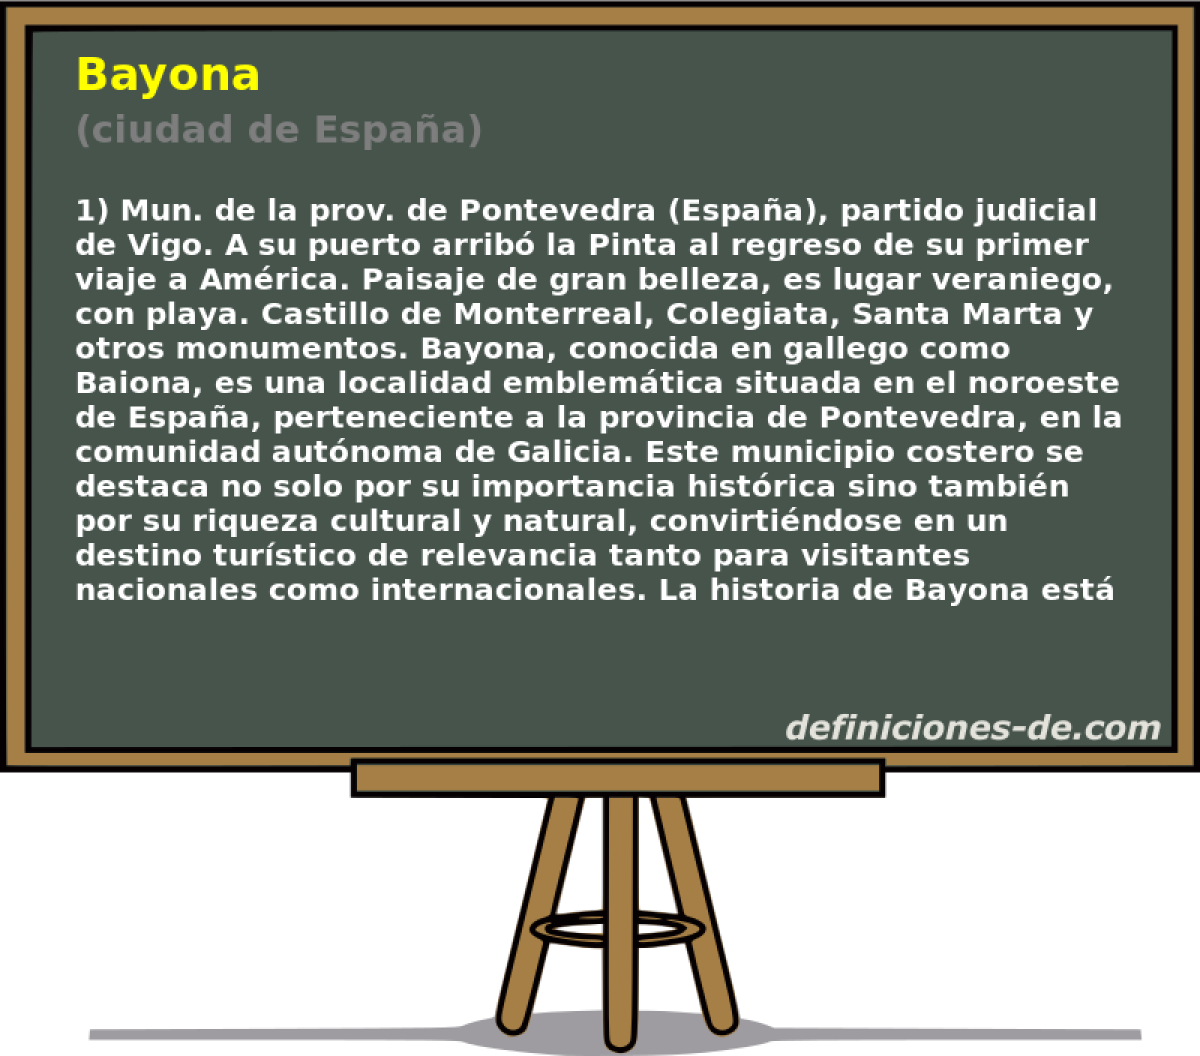 Bayona (ciudad de Espaa)